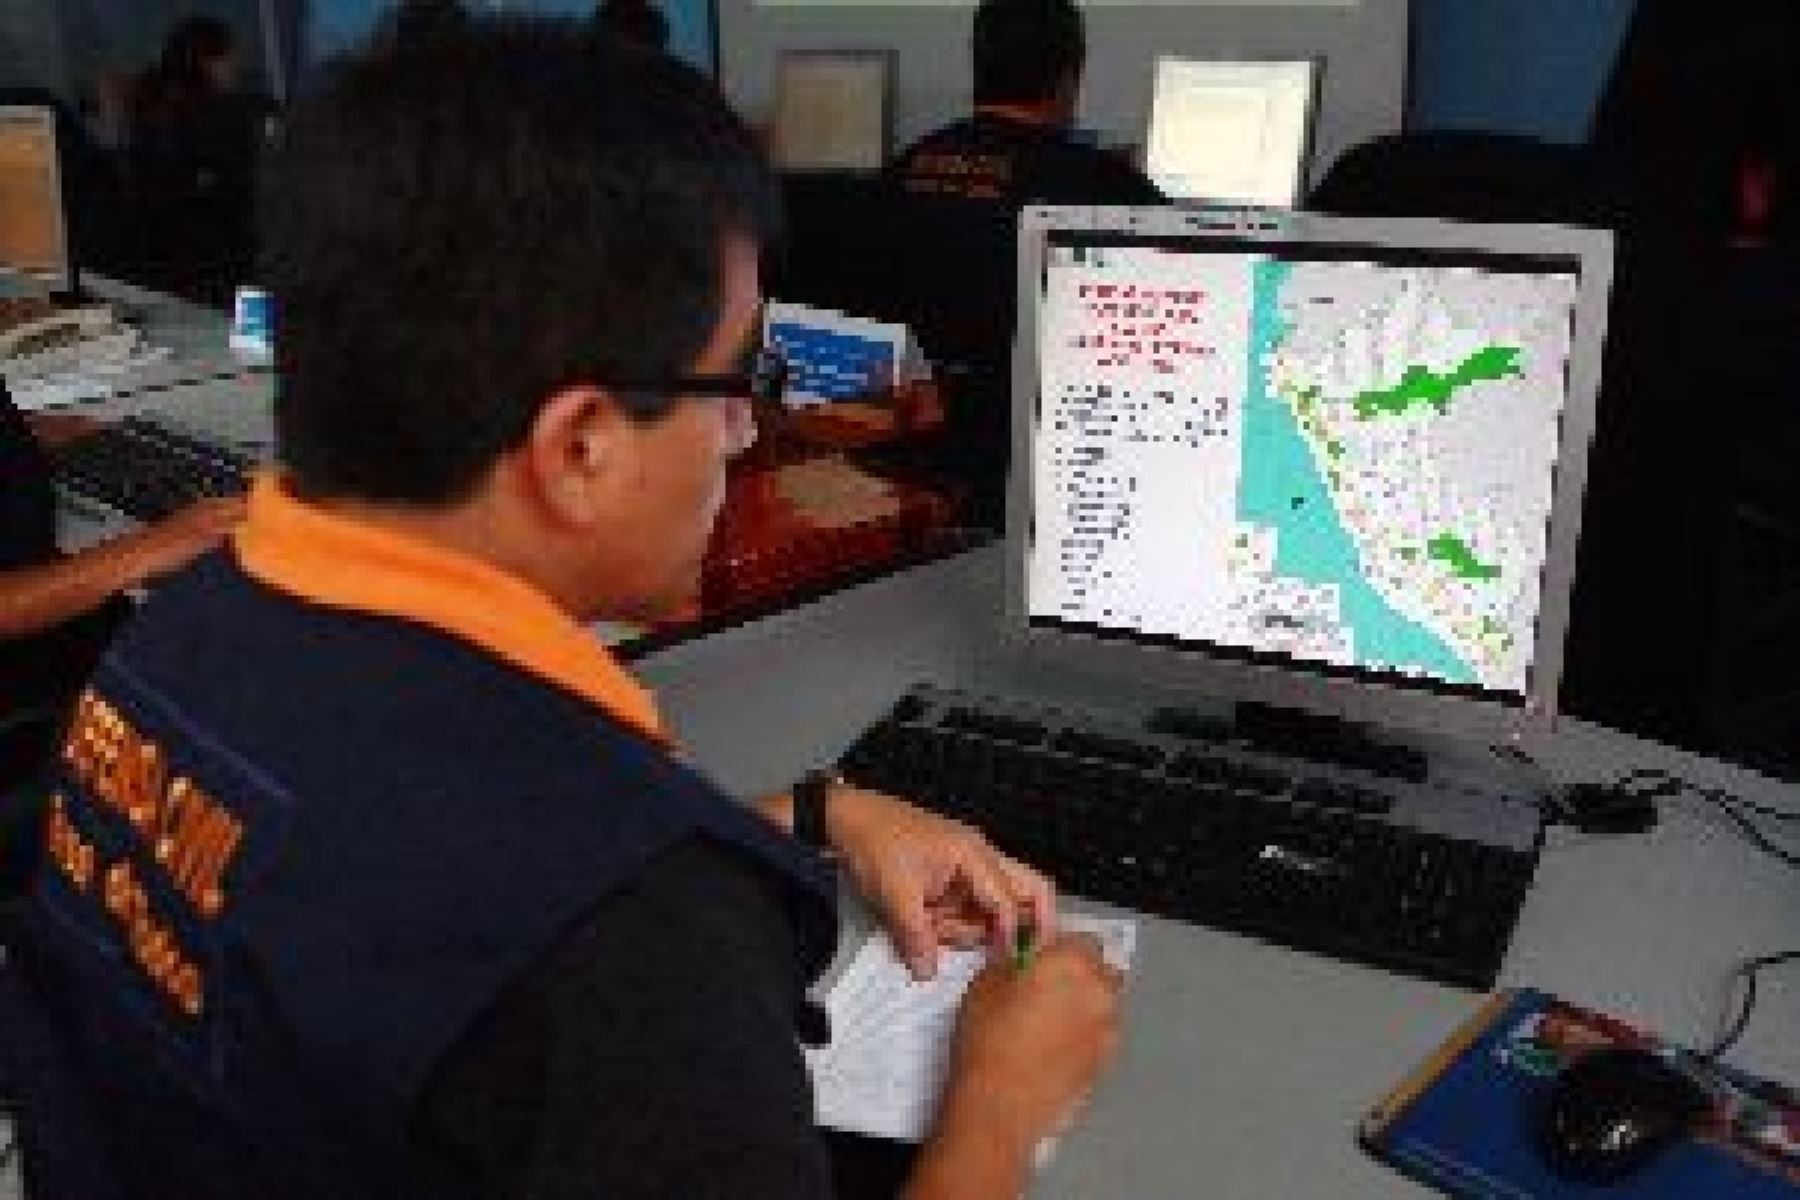 Centros de Operaciones de Emergencia Regional y locales monitorean las 24 horas los posibles daños ocurridos.